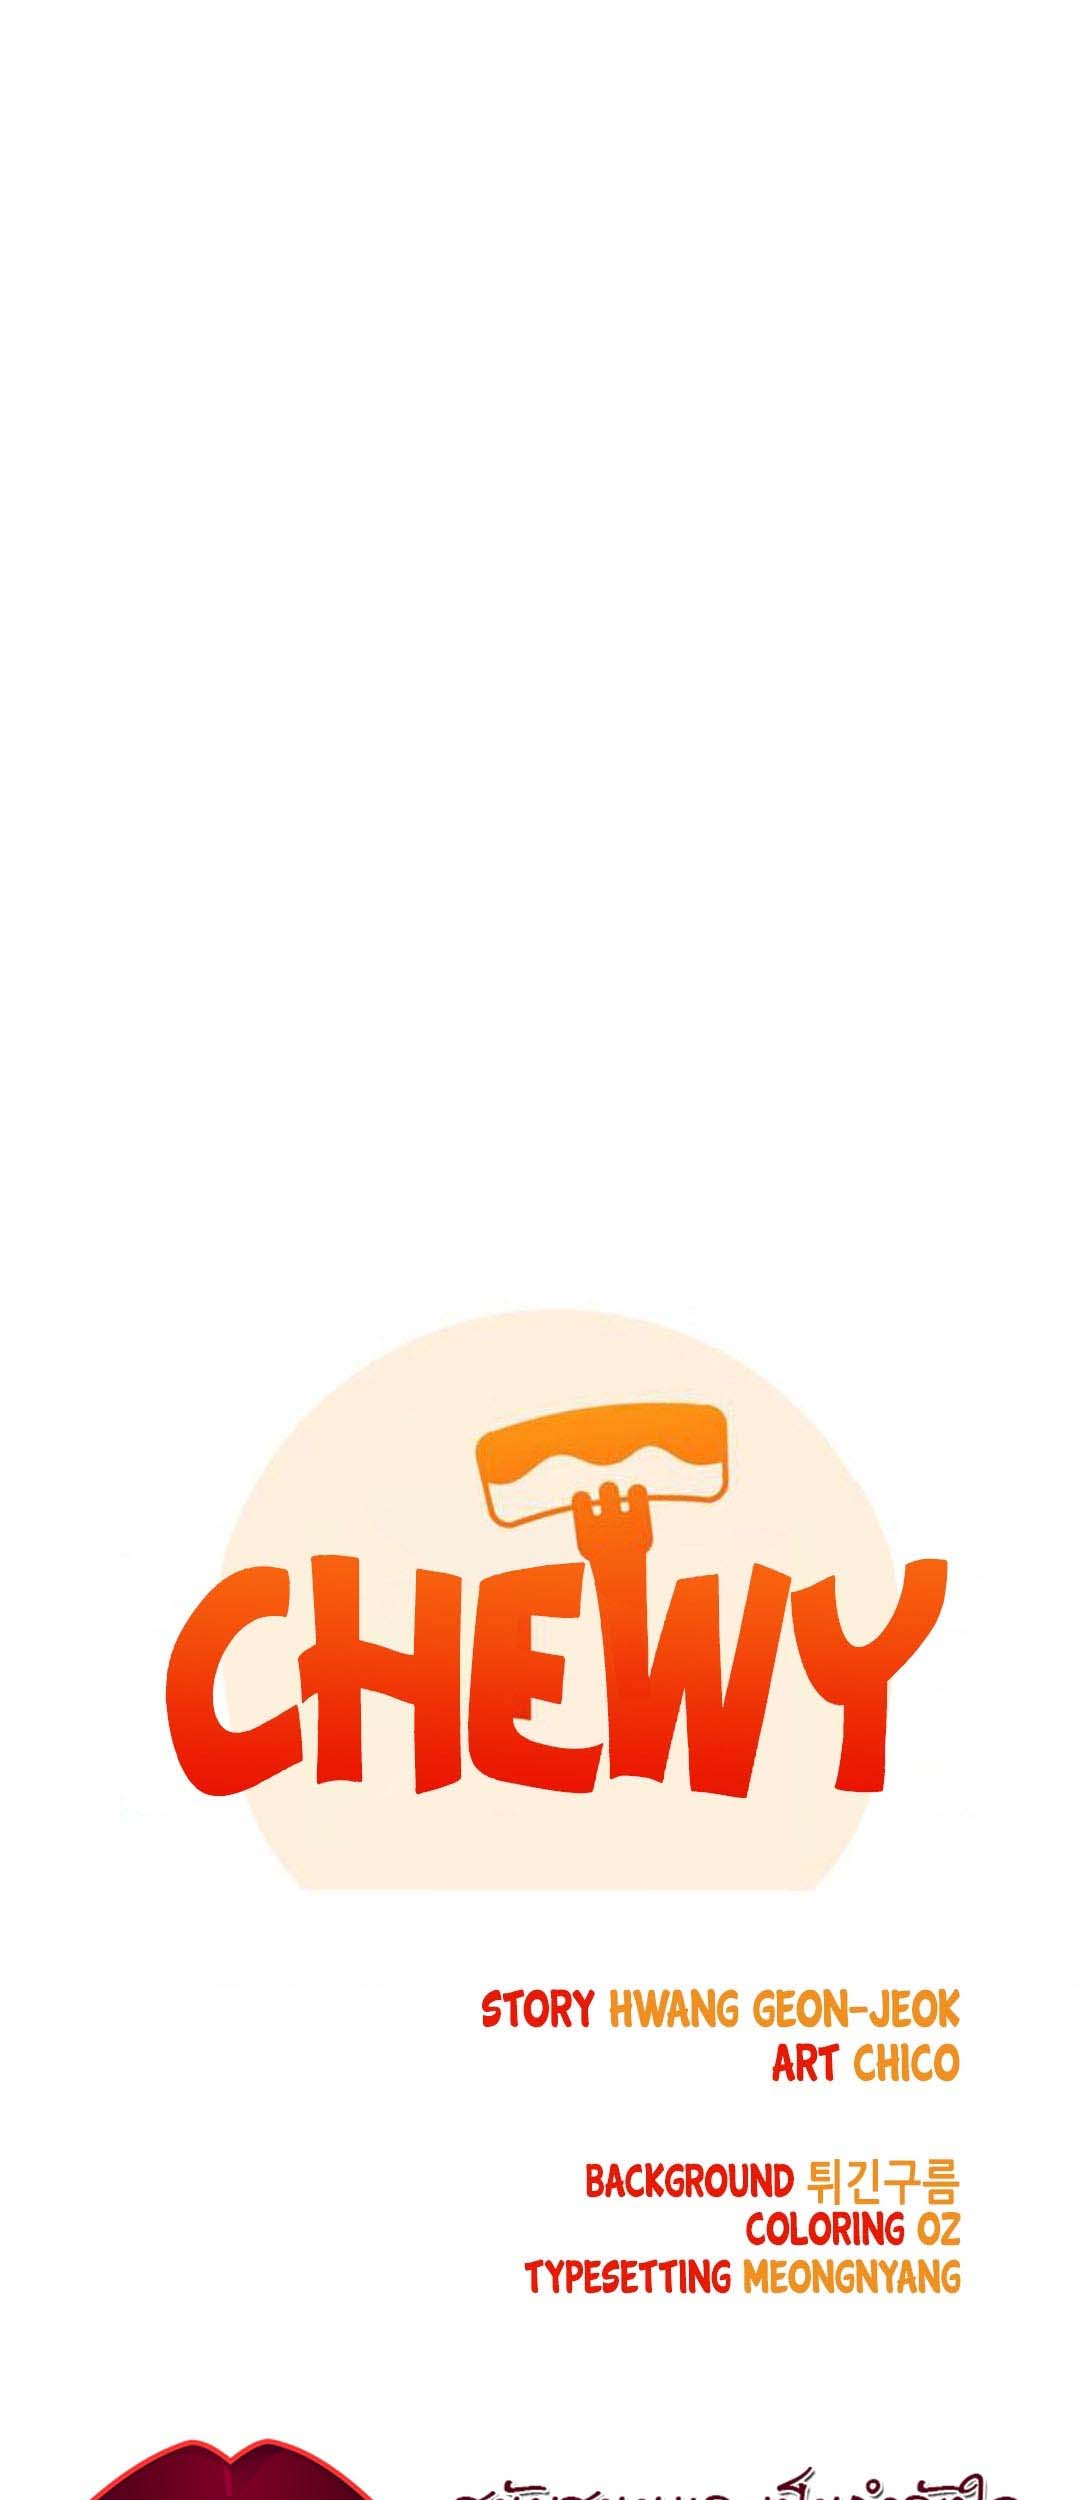 อ่านโดจิน เรื่อง Chewy 12 09